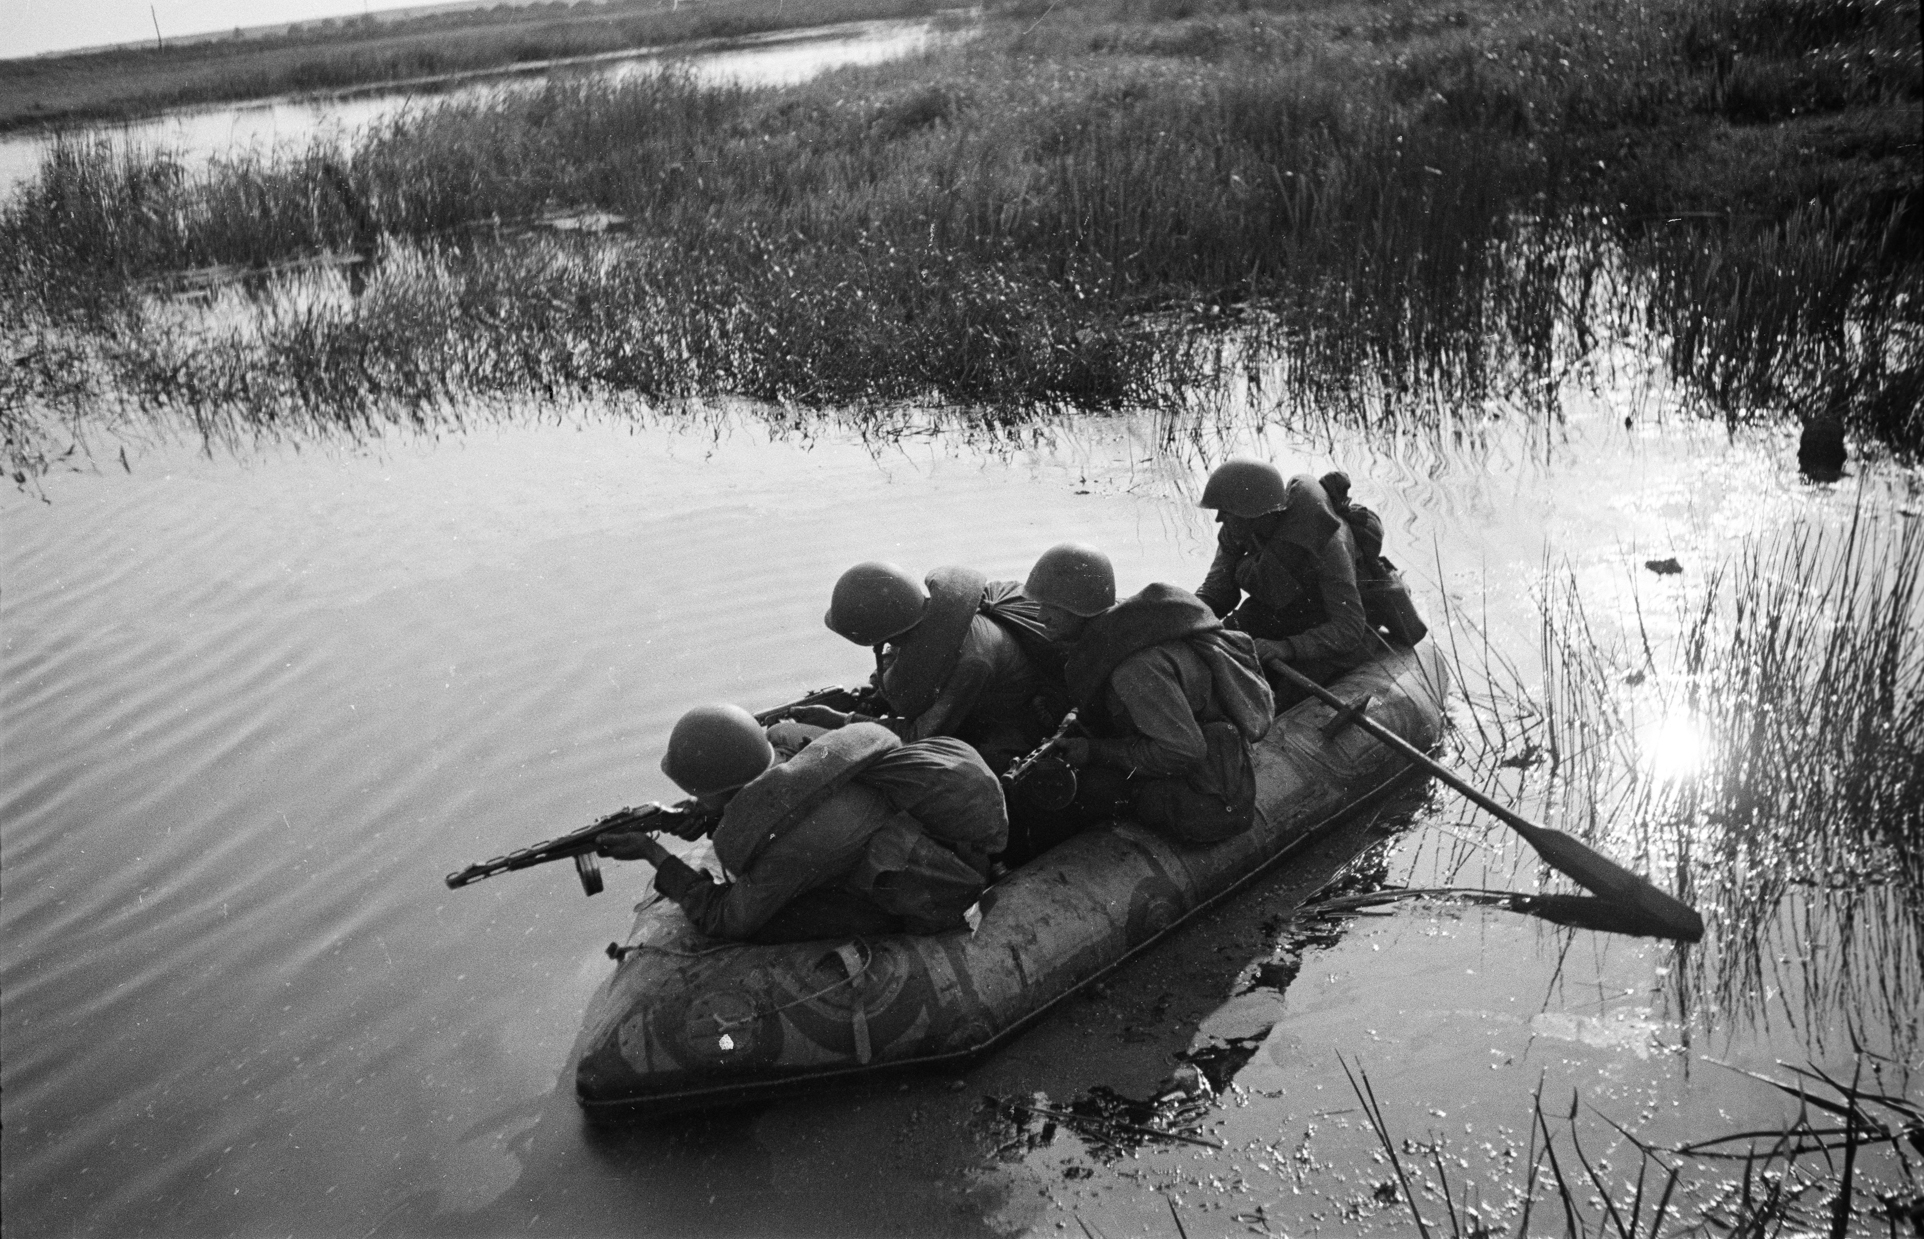 переправа через реку военные